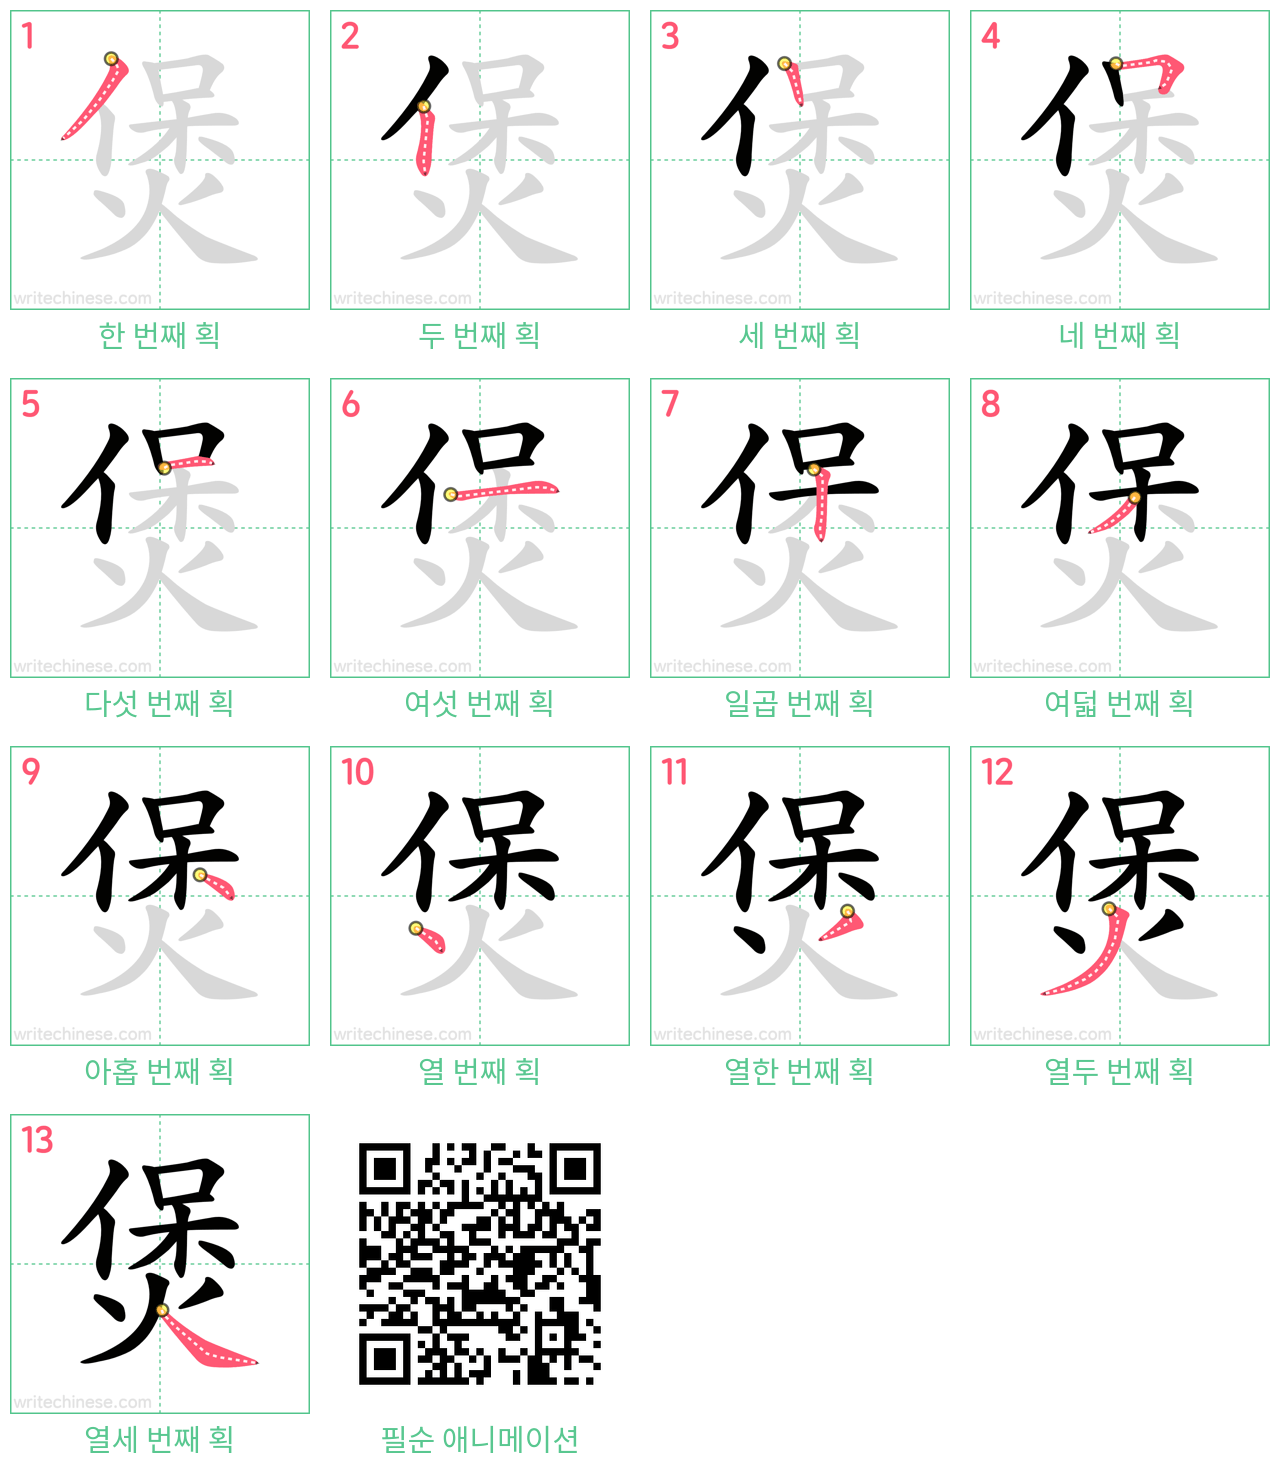 煲 step-by-step stroke order diagrams